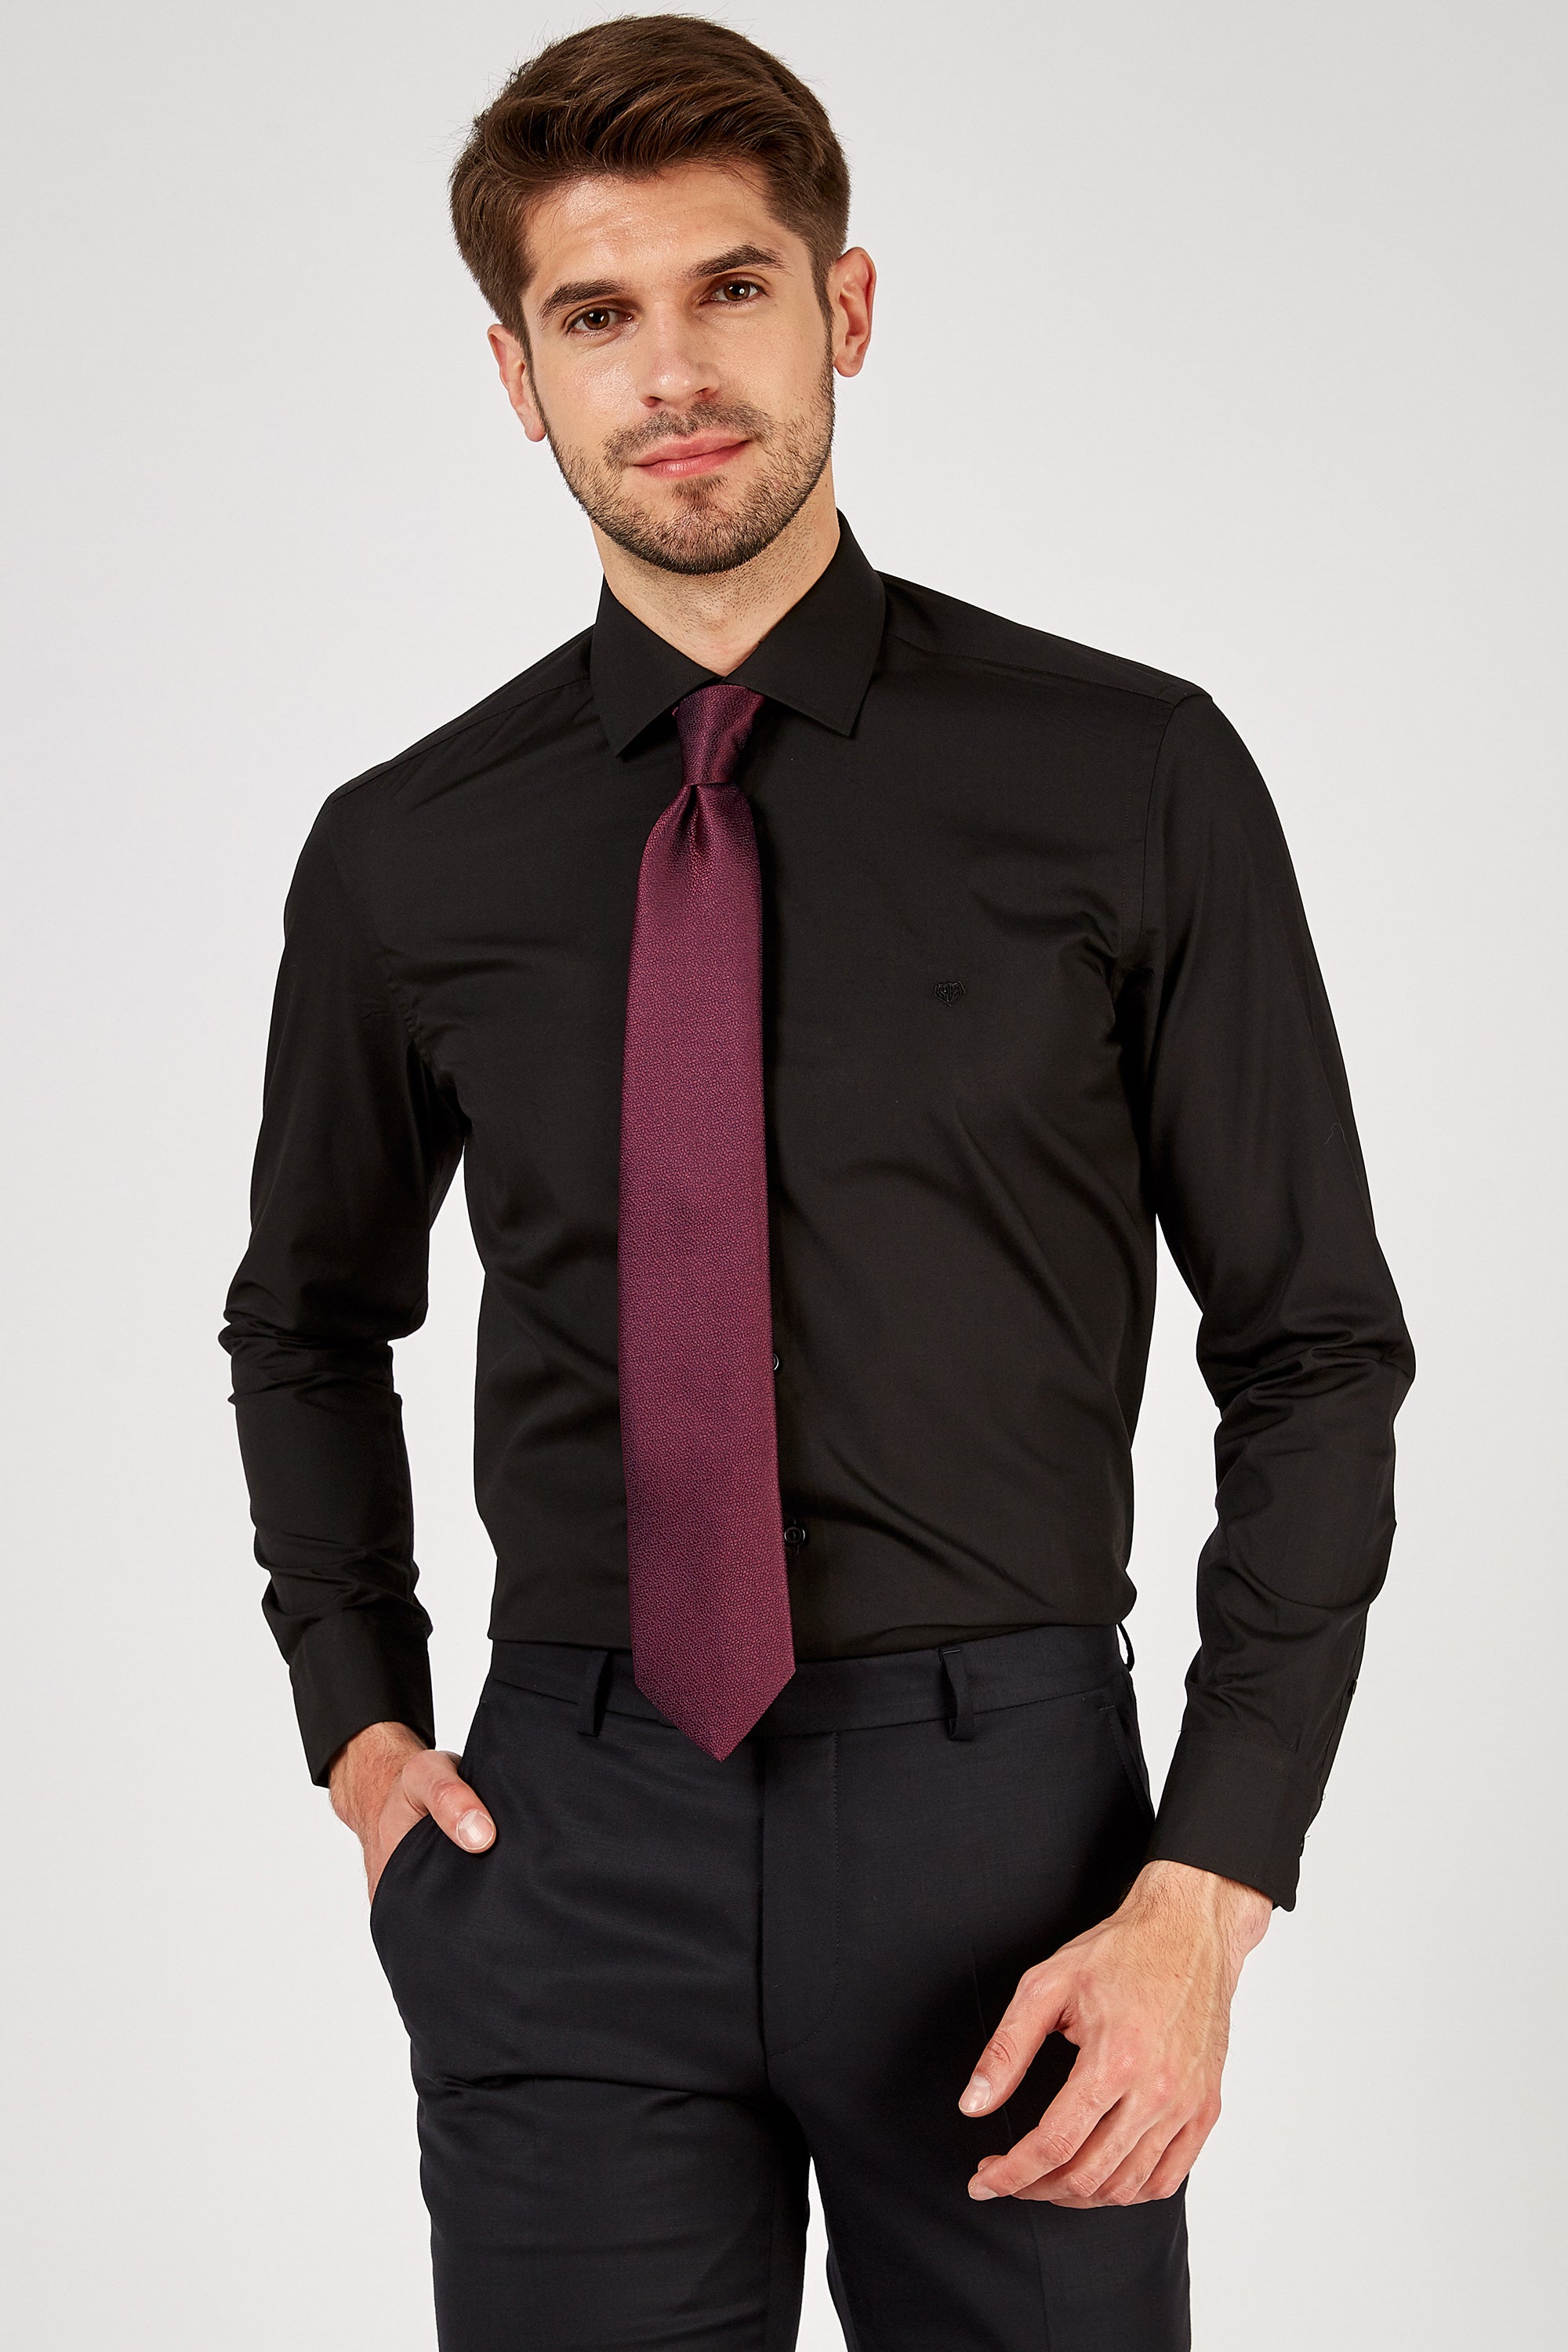 plain black shirt formal